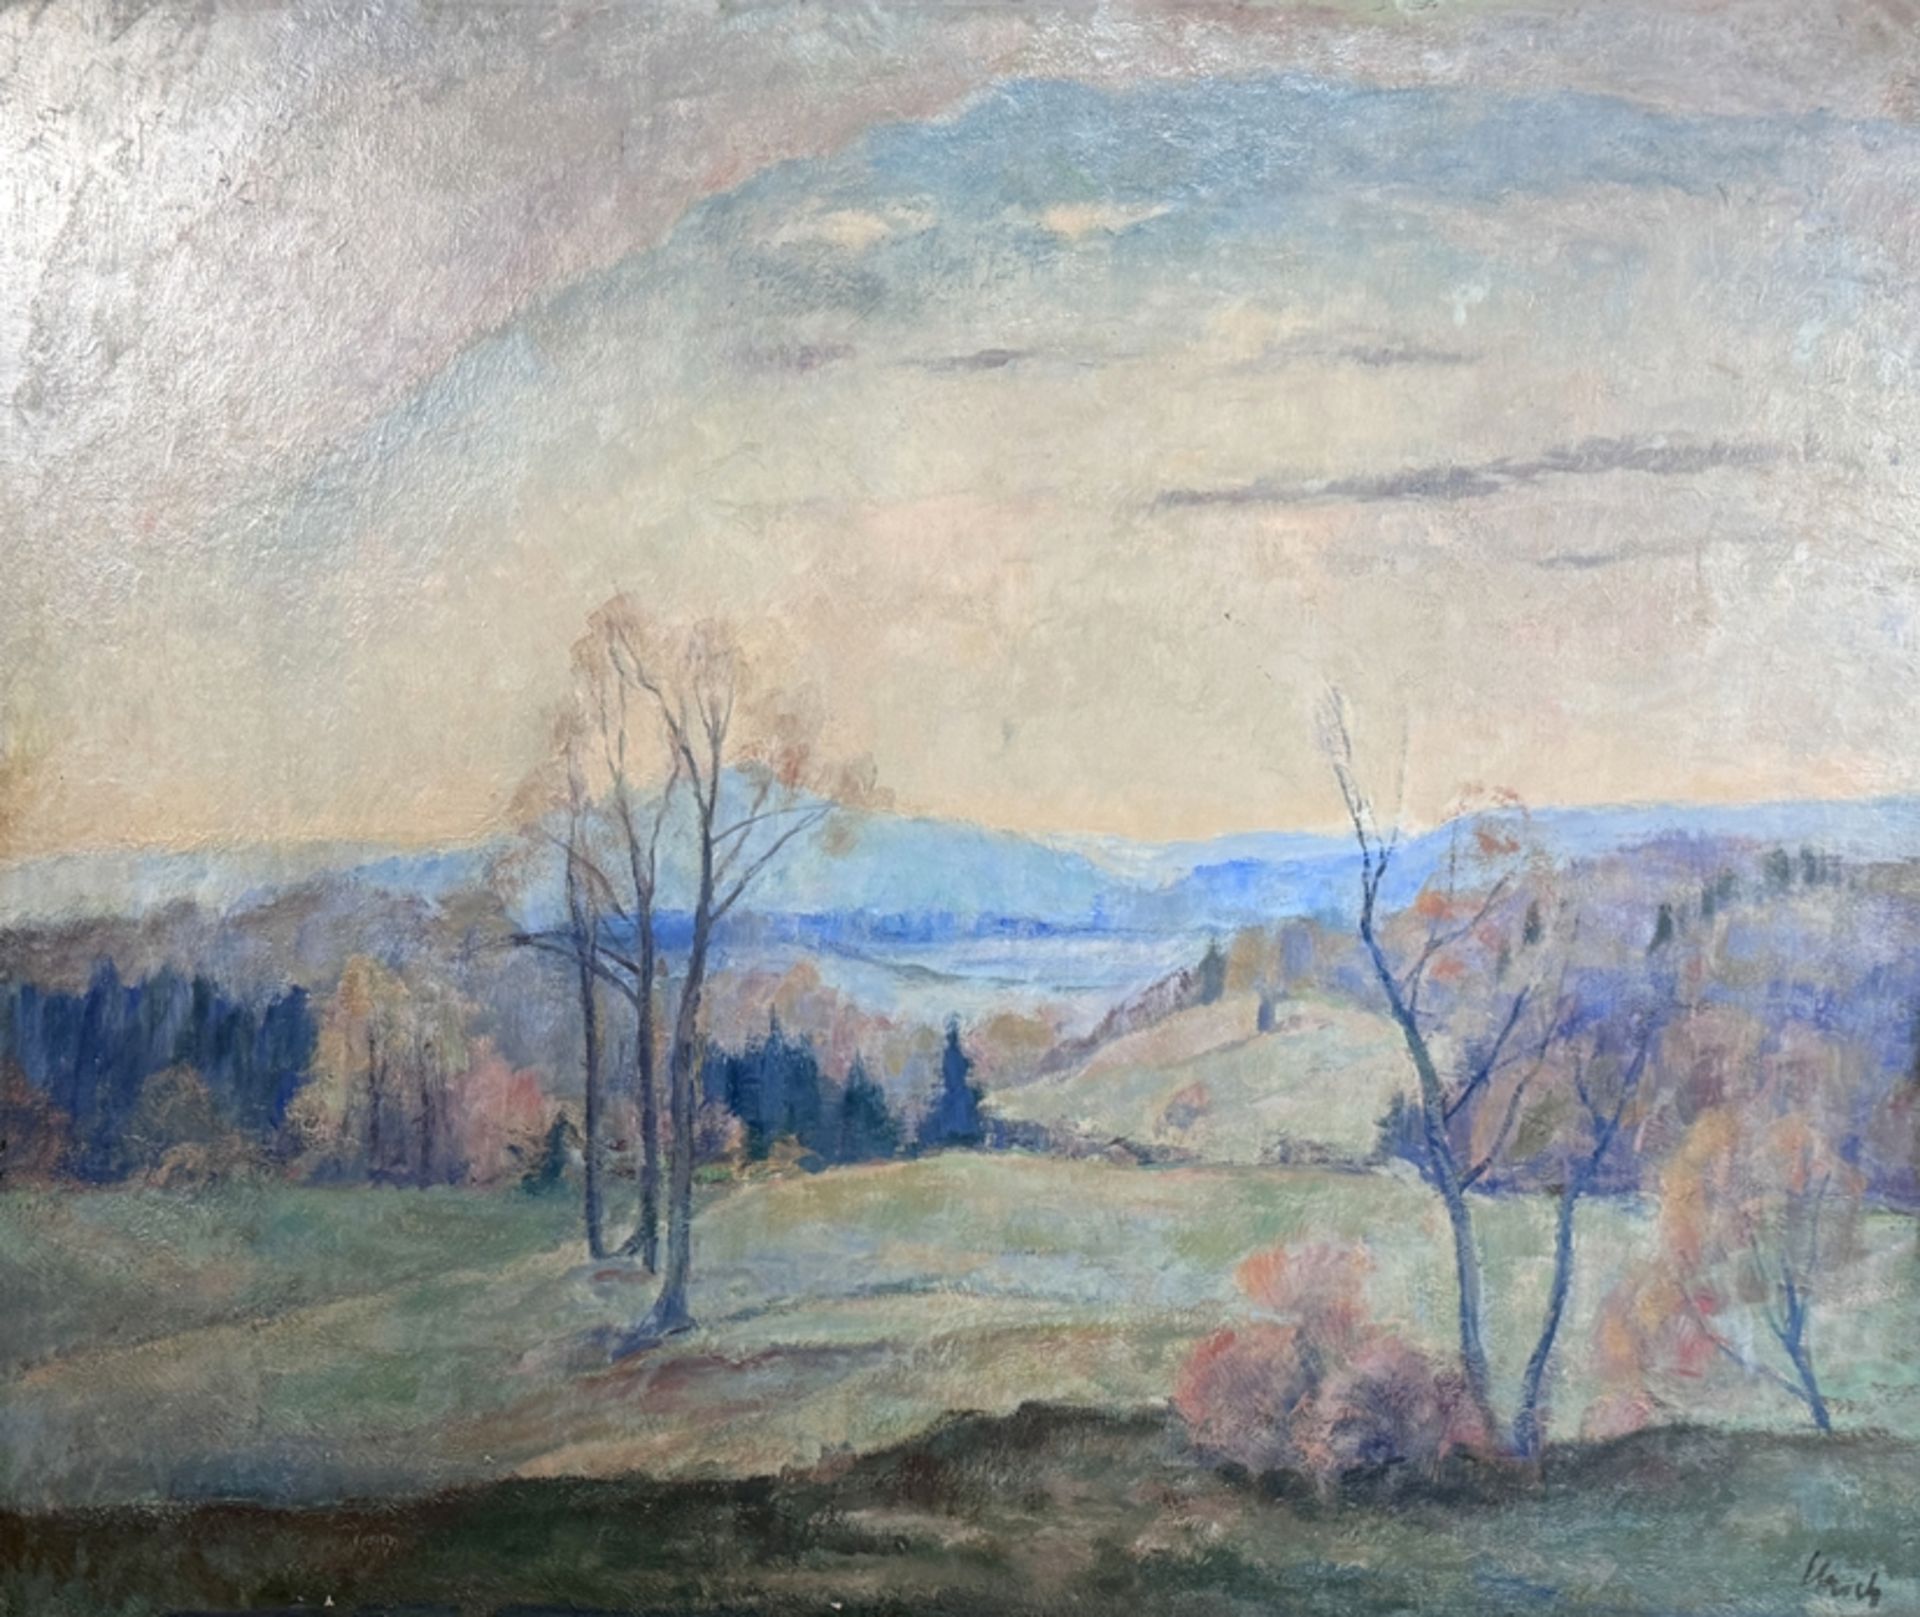 Landschaftsmaler/In (20. Jahrhundert) "Herbstlandschaft", weiter Ausblick in hügelige Landschaft, i